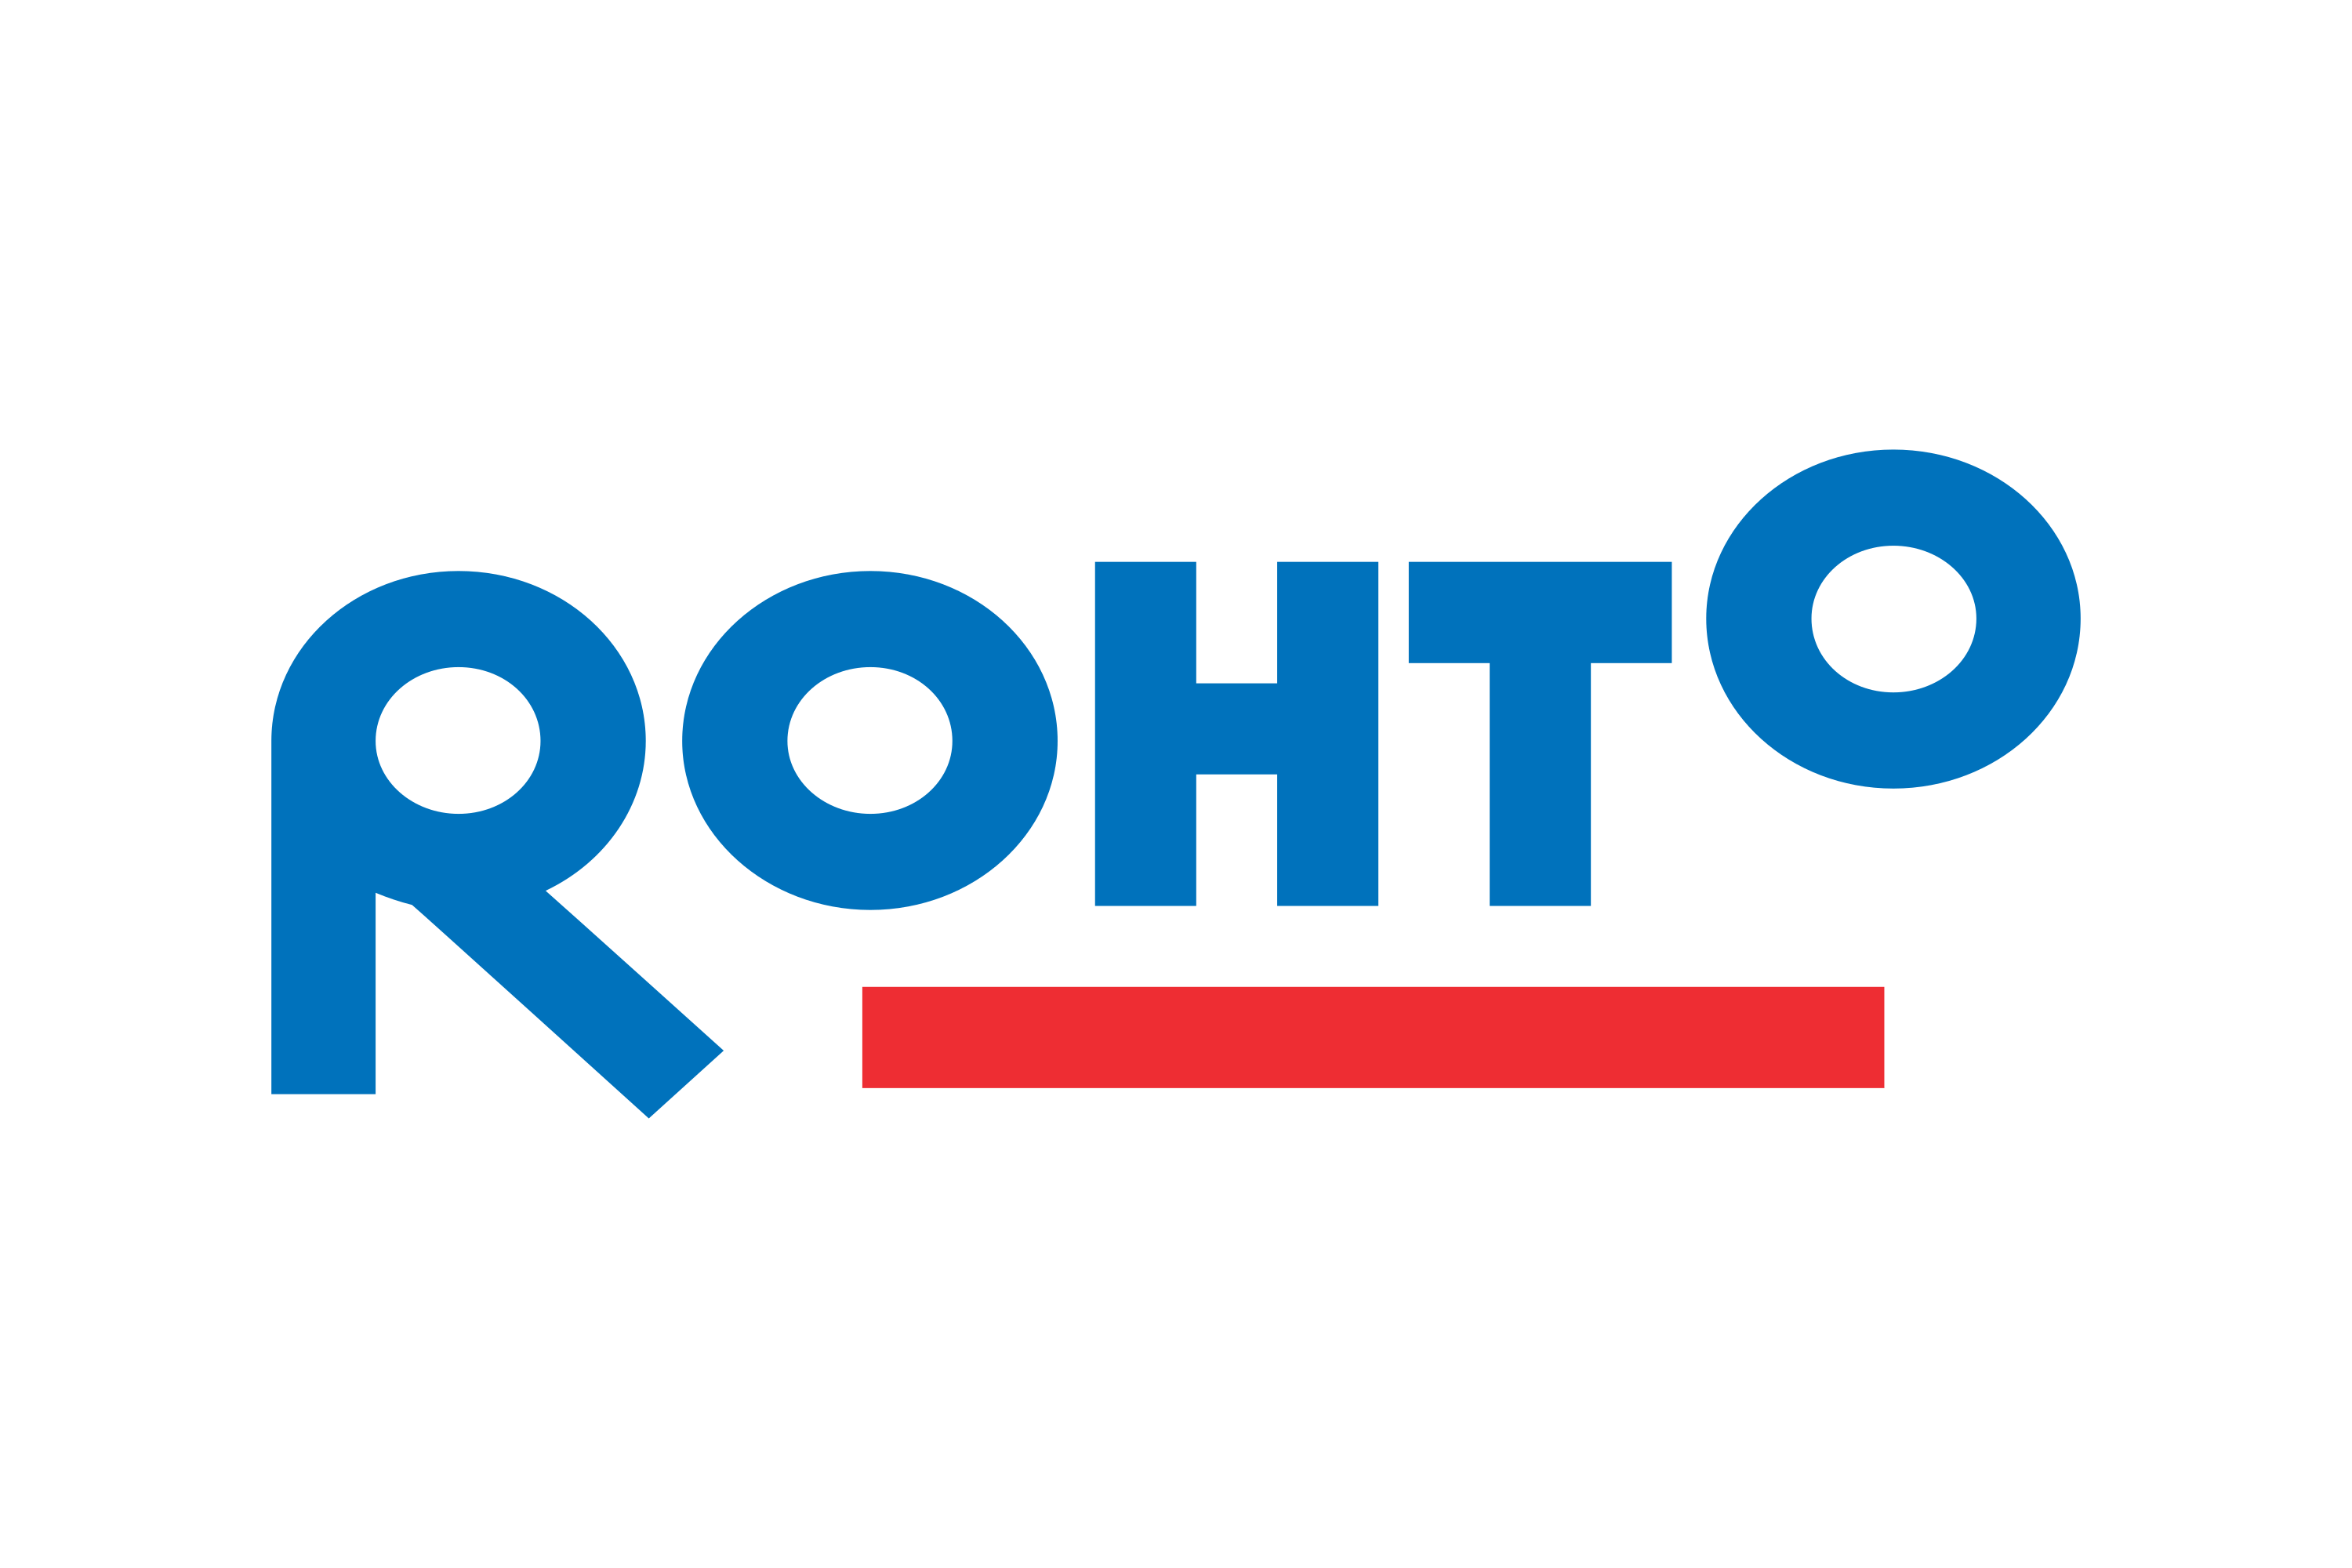 Rohto Pharmaceutical Logo